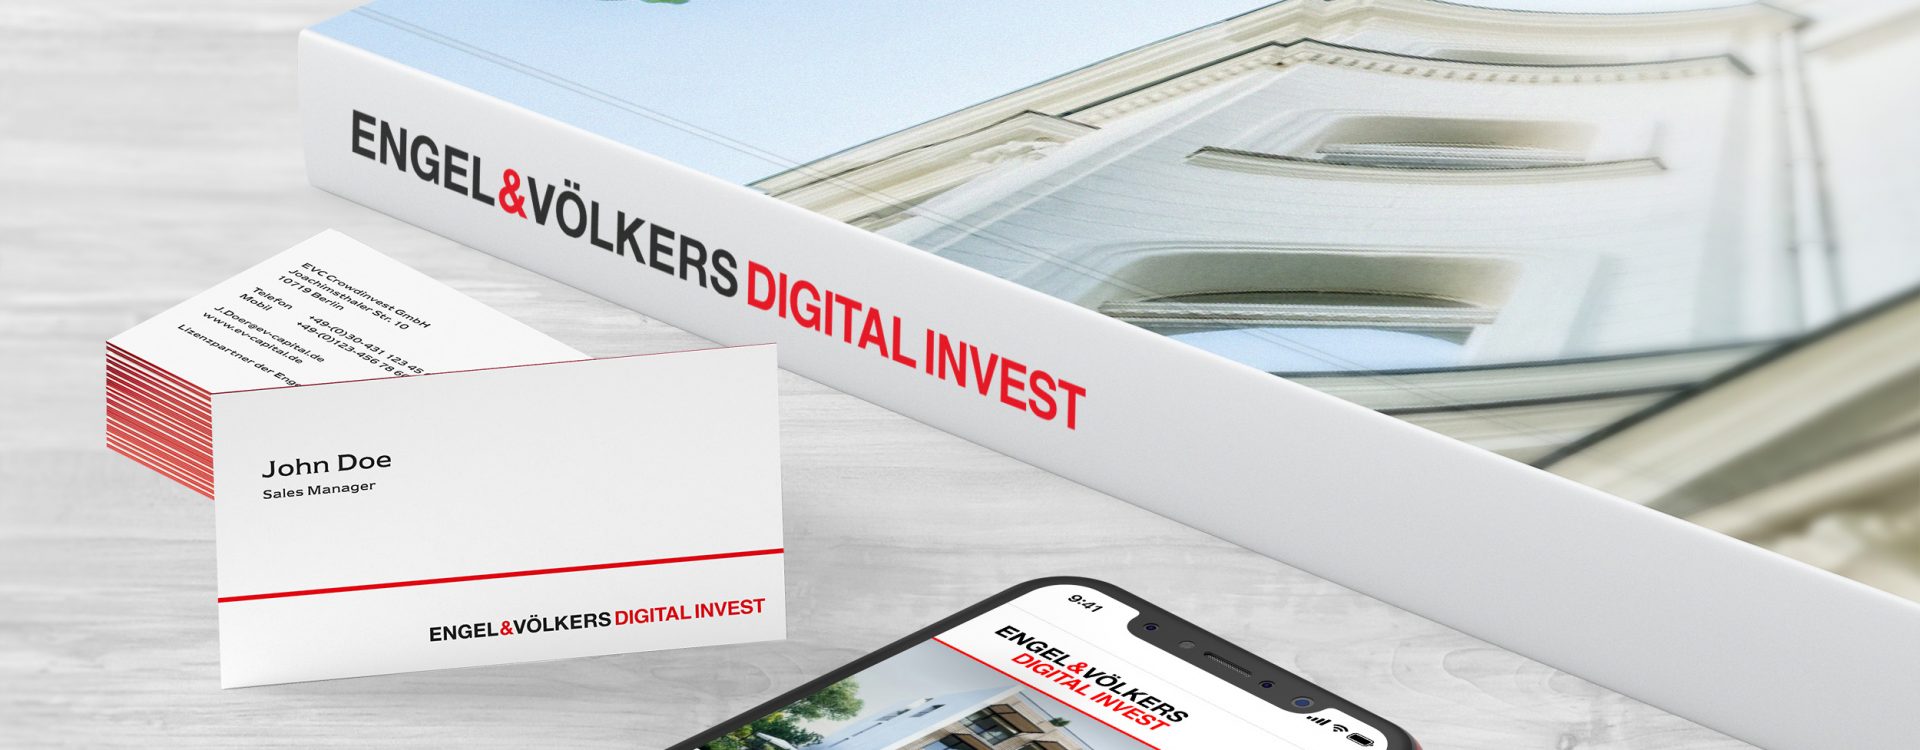 Engel & Völkers Digital Invest - Imagebroschüre-Mobilansicht-Visitenkarten